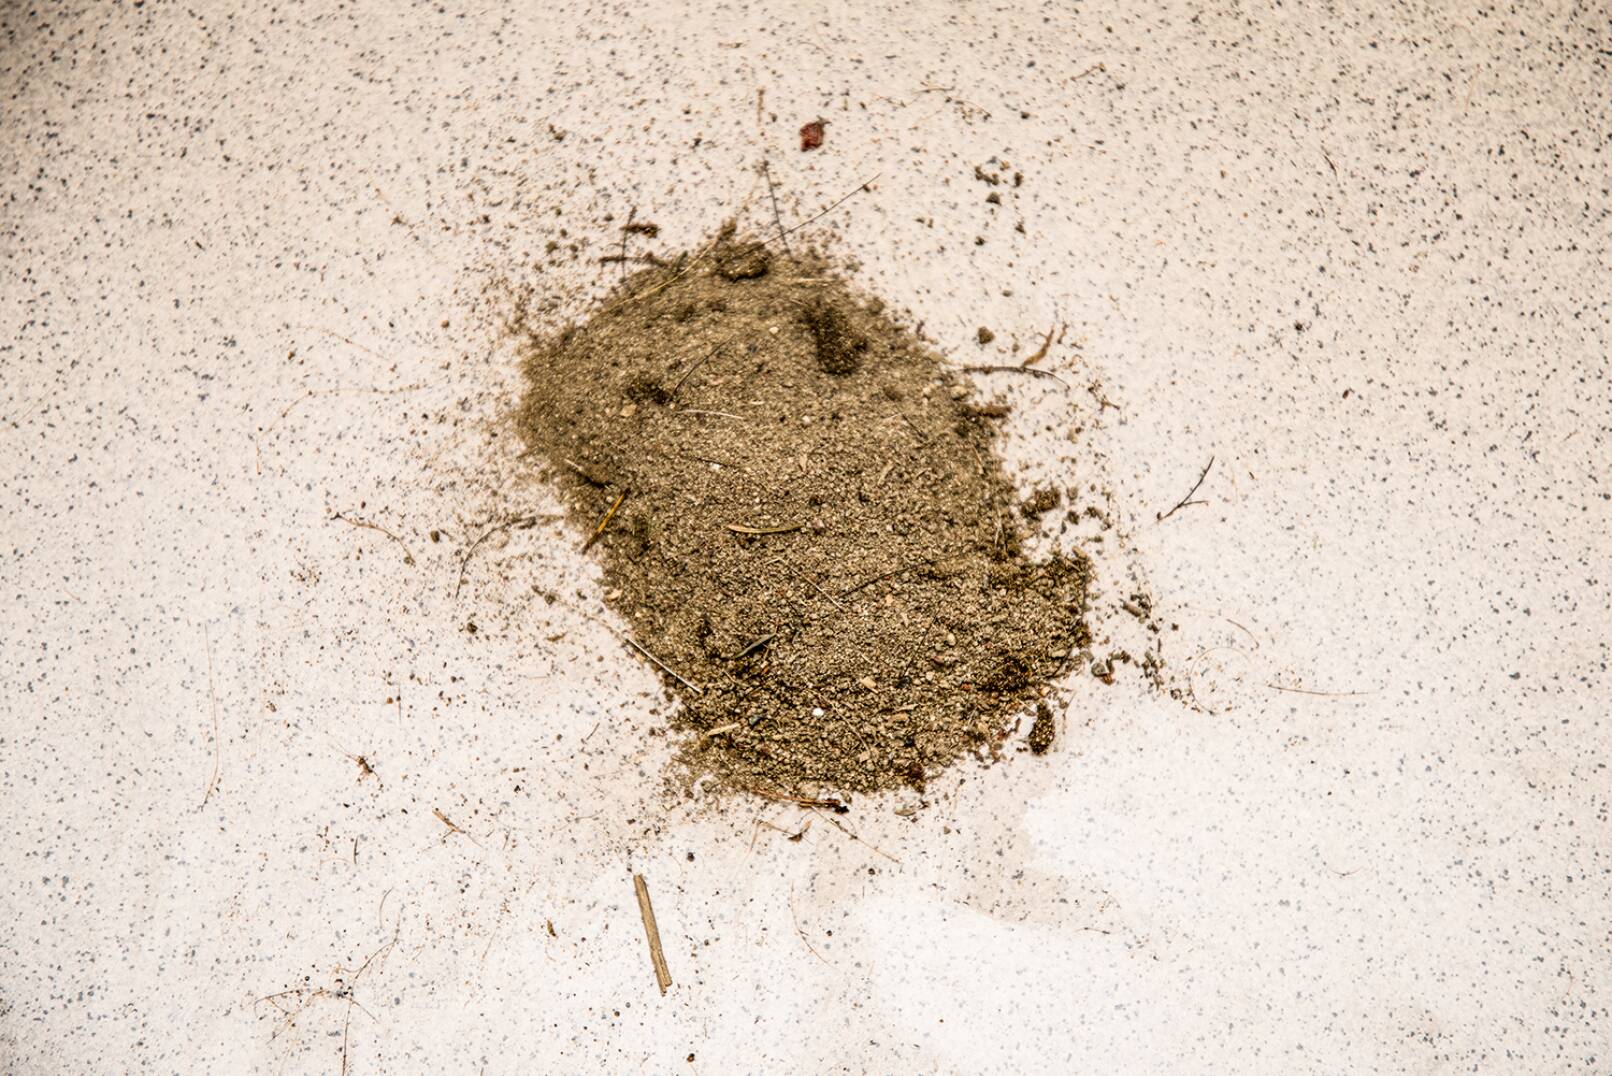 Sand aus der Sommerschwarte - Sand rieselte aus der Sommerschwarte, insgesamt mehr als 1 kg! - © Martin Grasberger